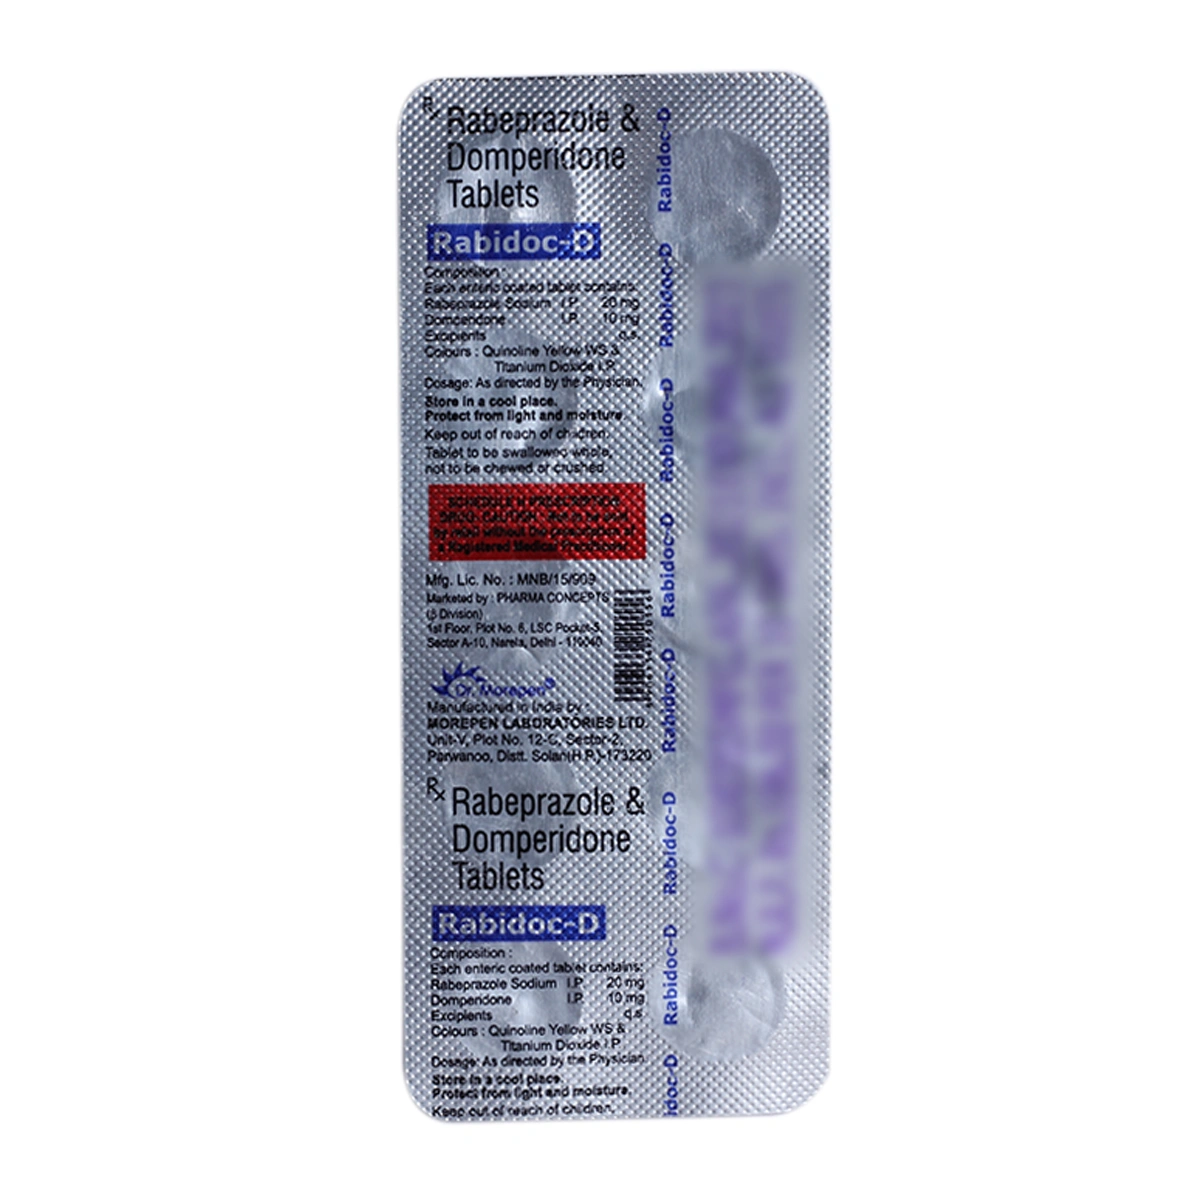 Rabidoc-D Tablet